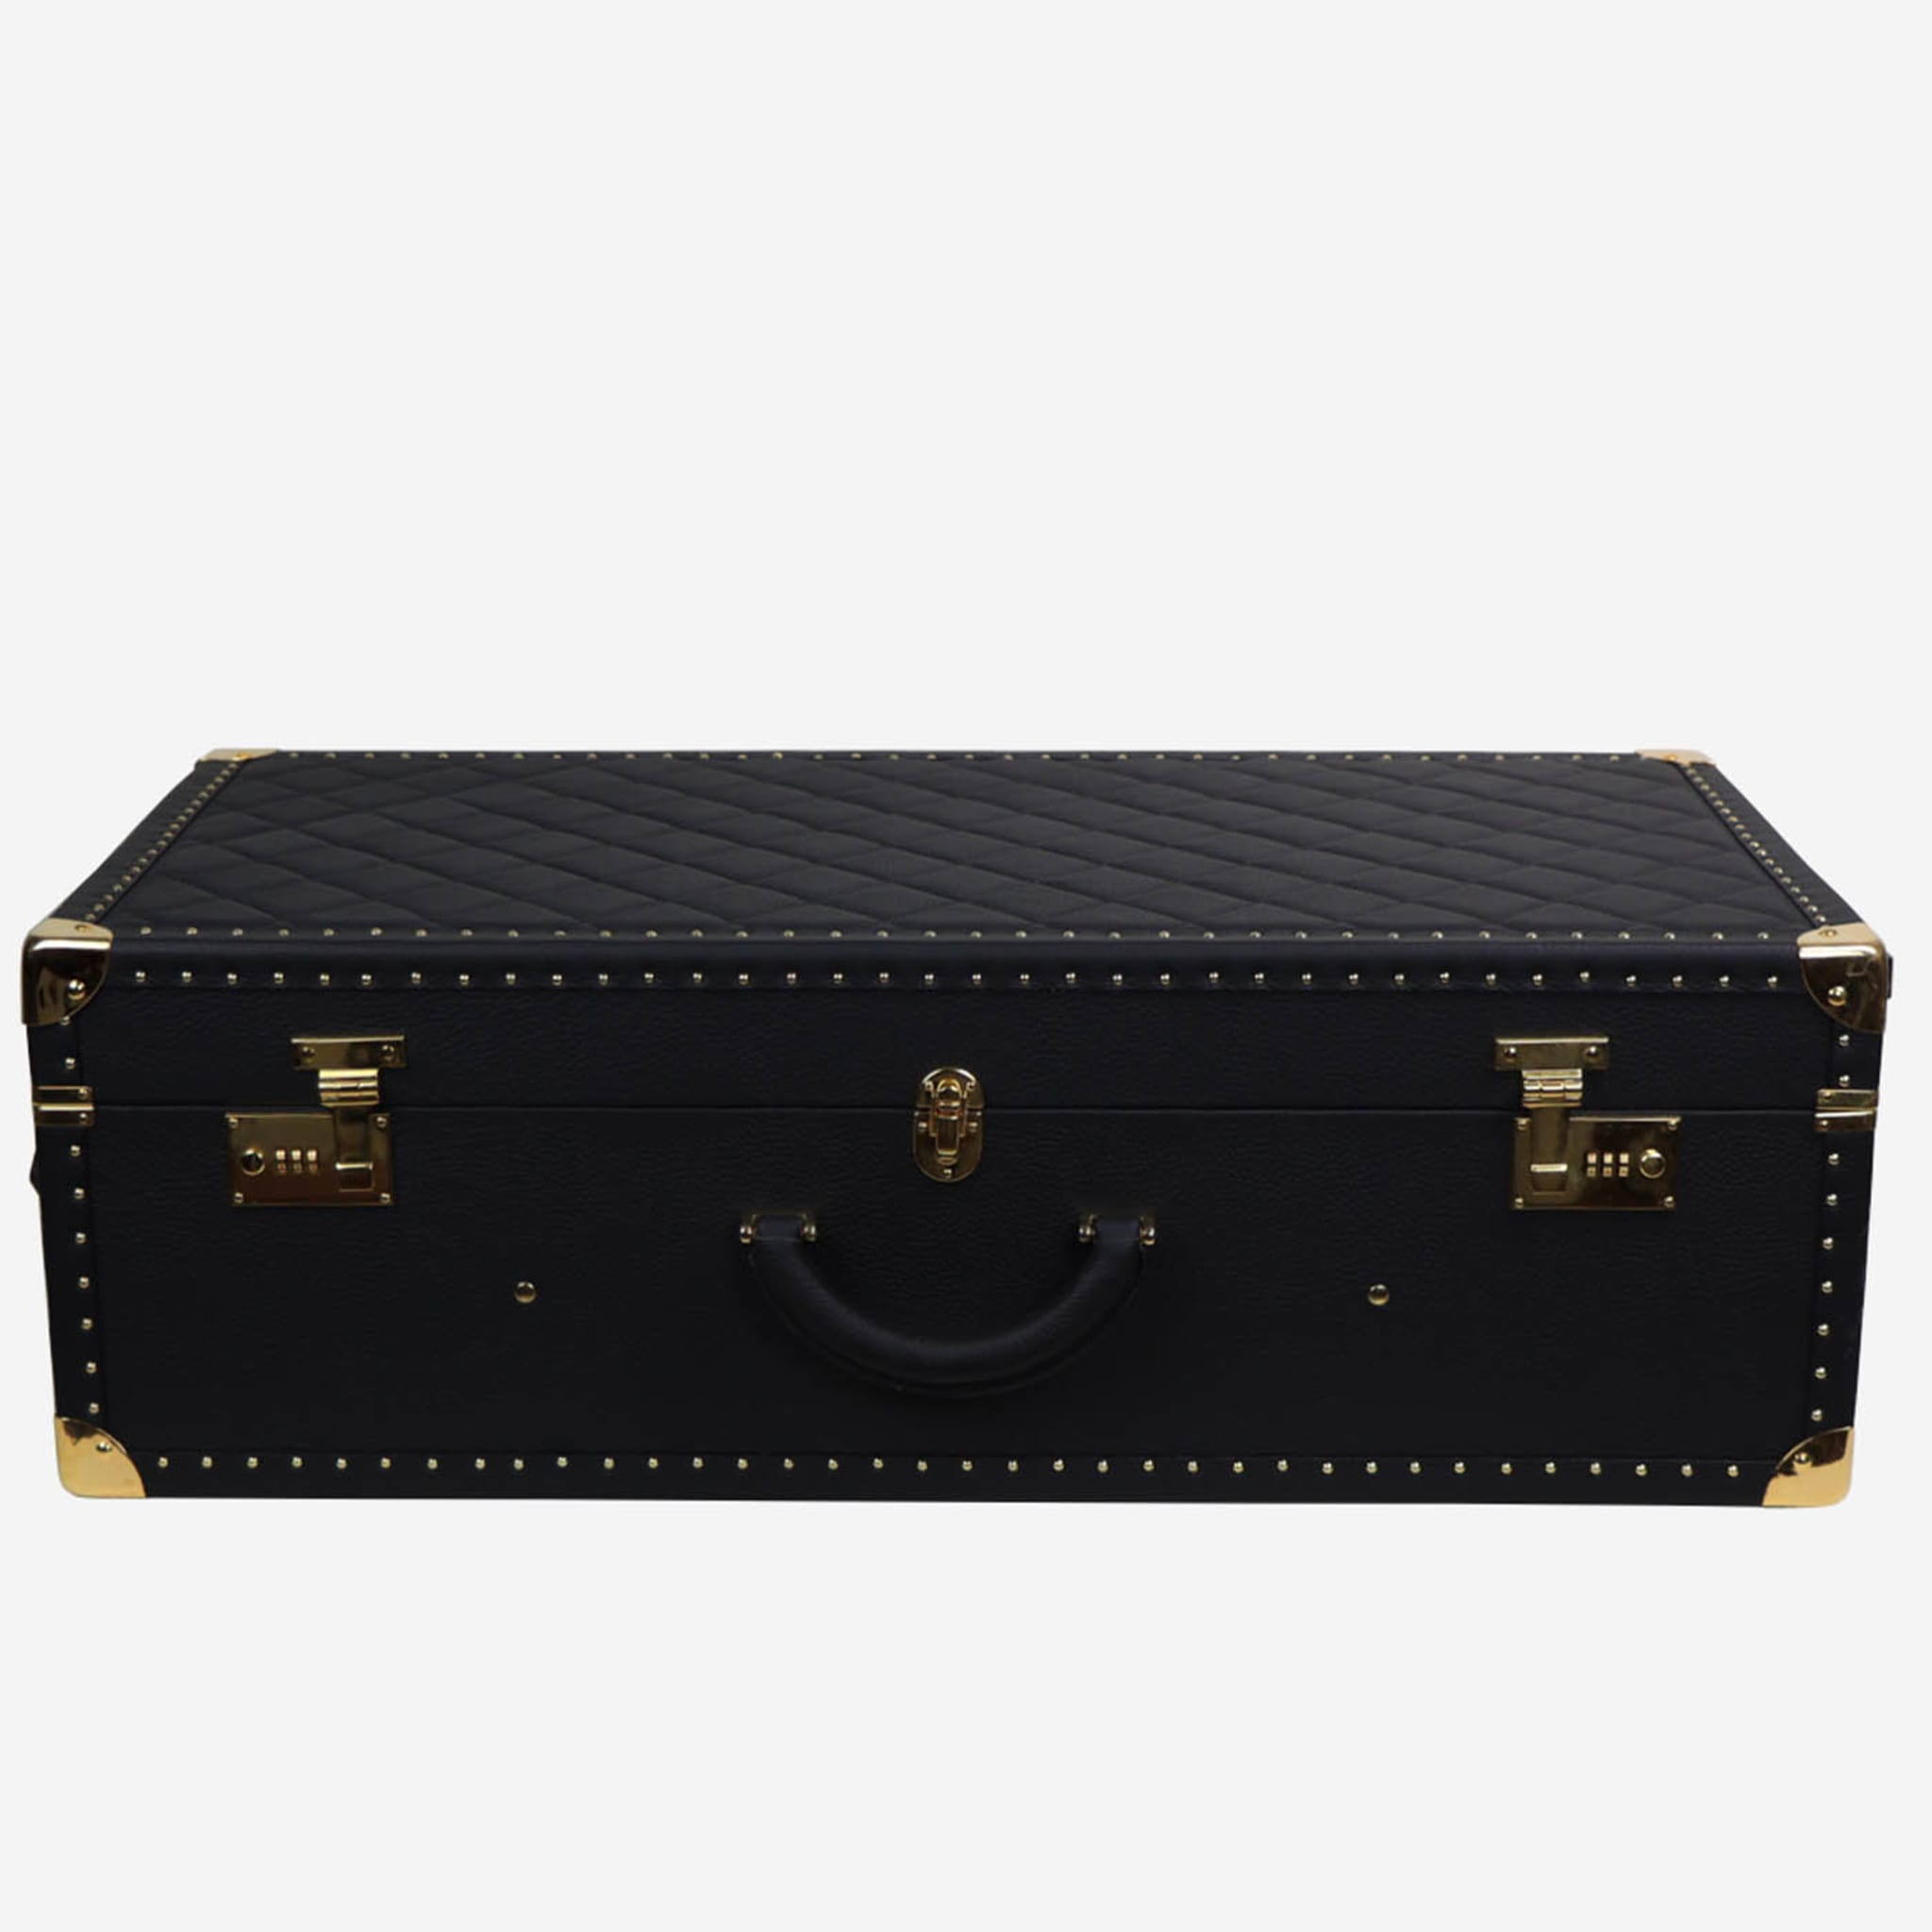 Regale Quilted Medium Black Suitcase - Alternative view 3